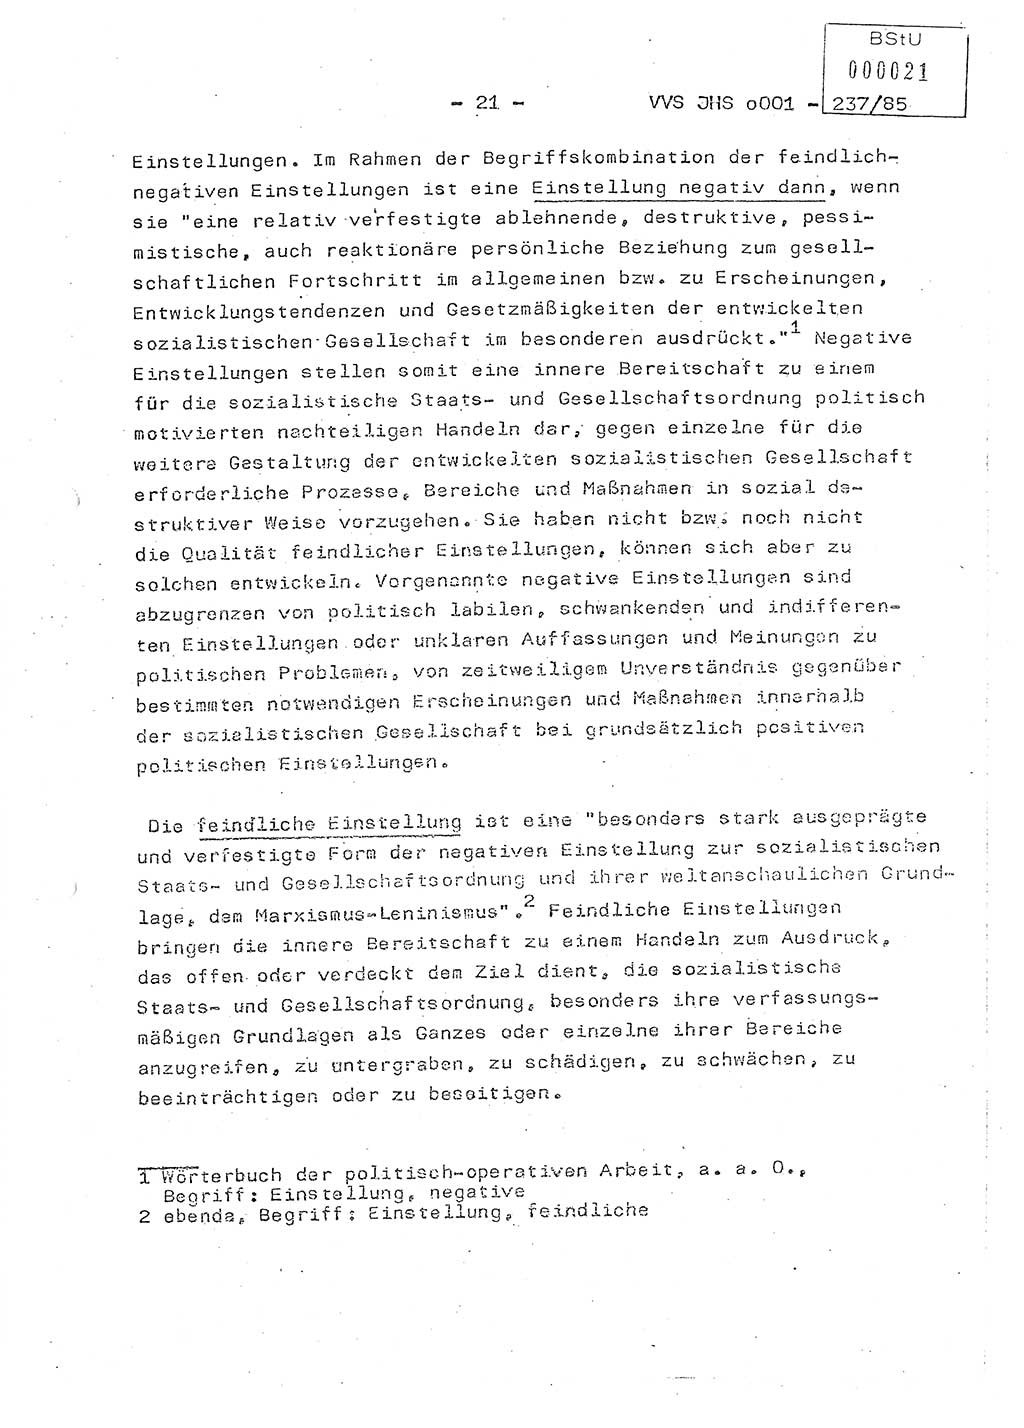 Dissertation Oberstleutnant Peter Jakulski (JHS), Oberstleutnat Christian Rudolph (HA Ⅸ), Major Horst Böttger (ZMD), Major Wolfgang Grüneberg (JHS), Major Albert Meutsch (JHS), Ministerium für Staatssicherheit (MfS) [Deutsche Demokratische Republik (DDR)], Juristische Hochschule (JHS), Vertrauliche Verschlußsache (VVS) o001-237/85, Potsdam 1985, Seite 21 (Diss. MfS DDR JHS VVS o001-237/85 1985, S. 21)